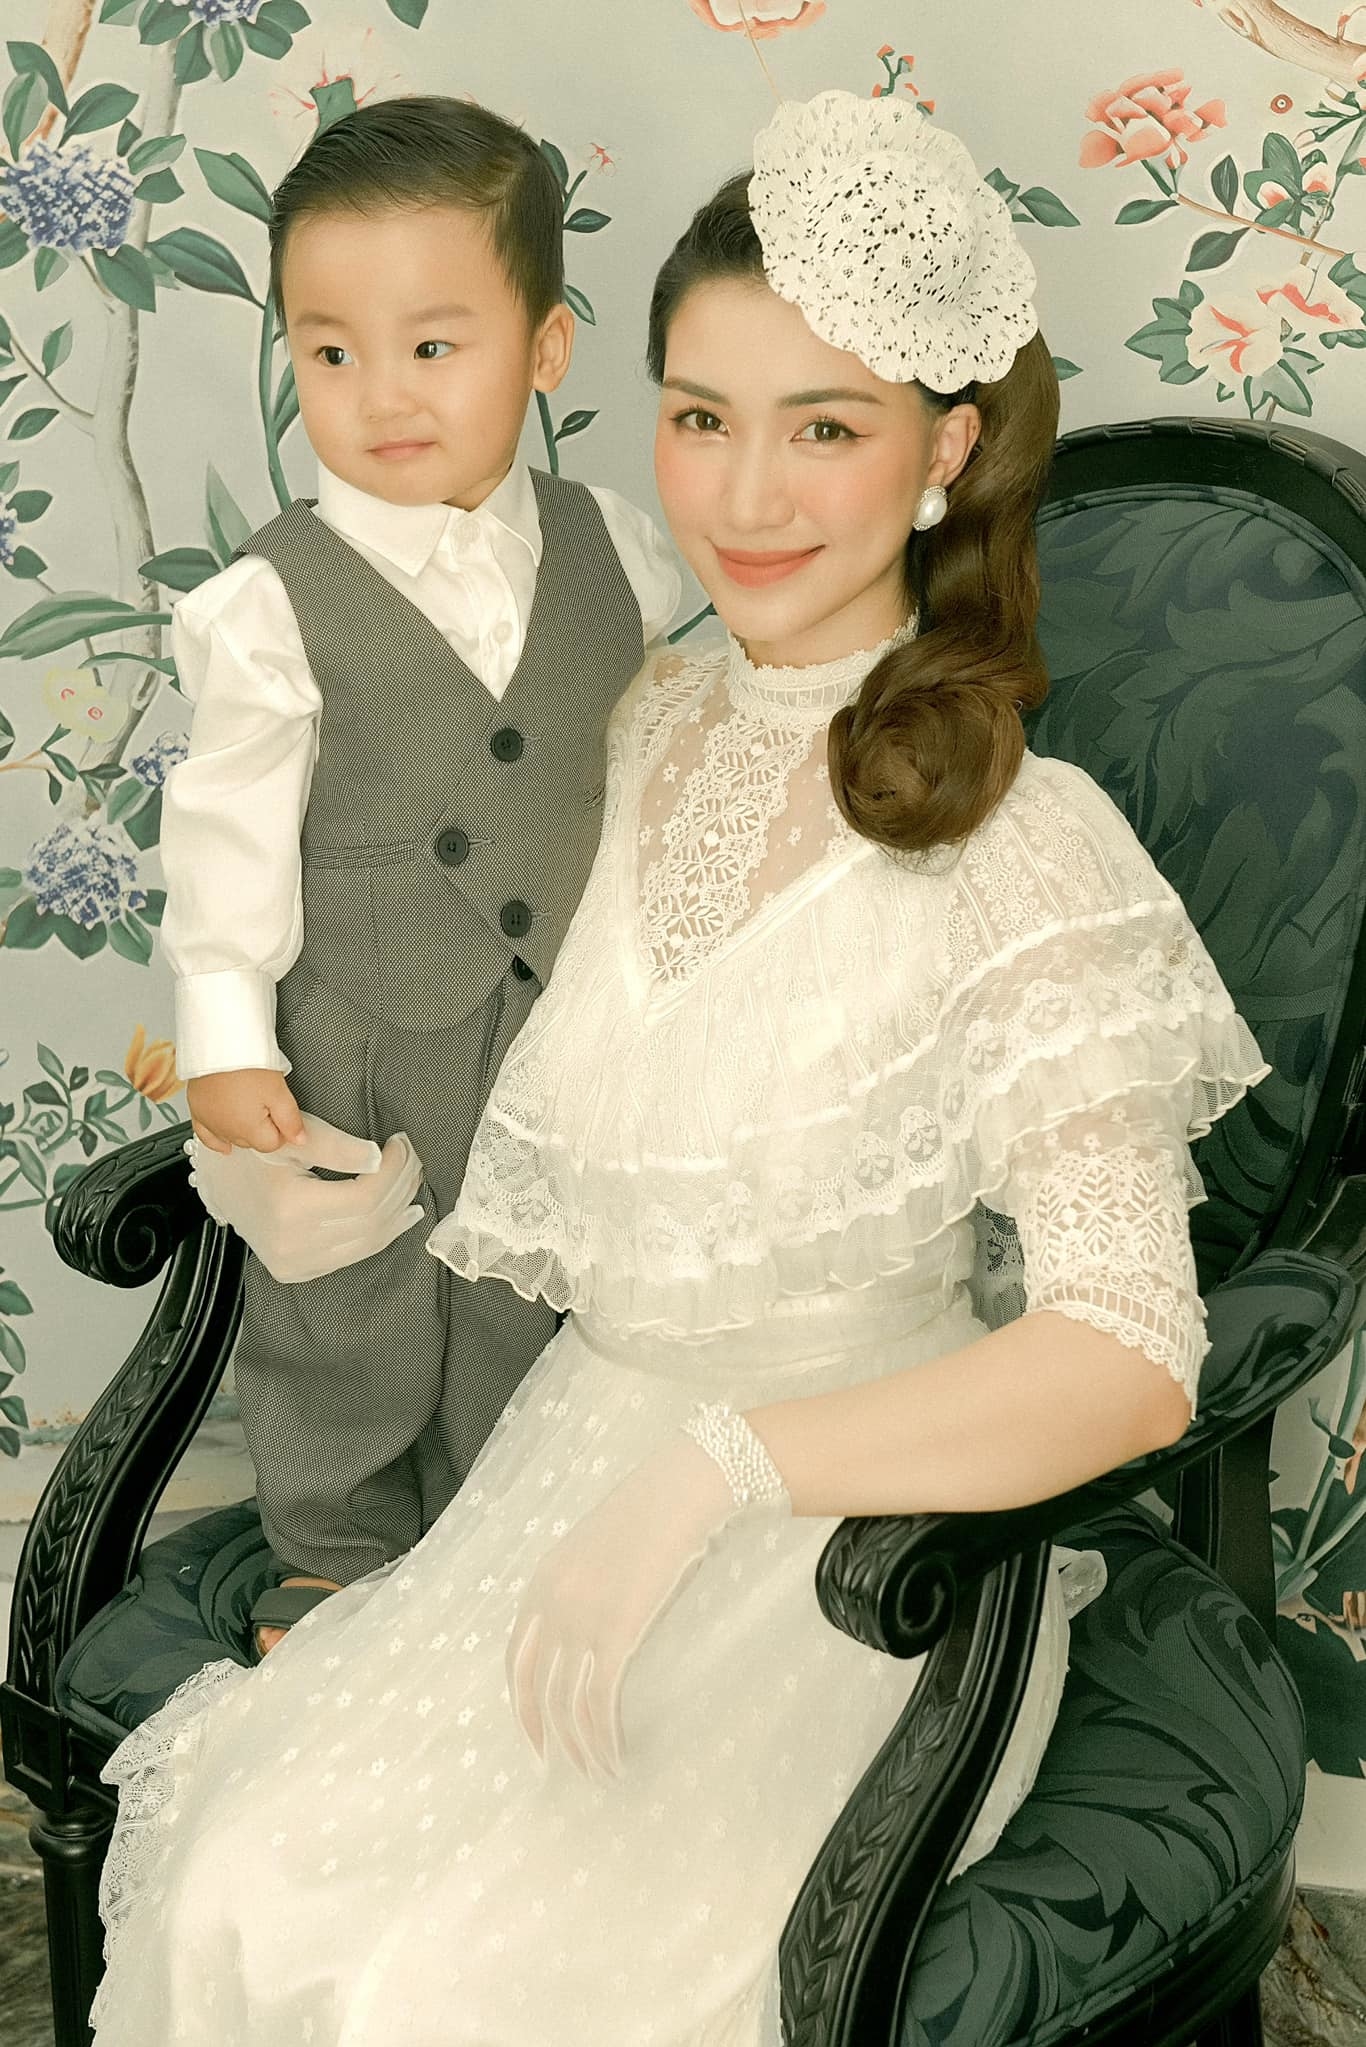 Trong một bộ ảnh thời, nhóc tì 4 tuổi ra dáng 'quý ông' với vest bảnh bao trong khi mẹ Hòa Minzy lên đồ nữ tính đậm chất quý tộc. Phong cách thời trang nam tính từ nhỏ giúp bé Bo thu hút lượng lớn người hâm mộ.